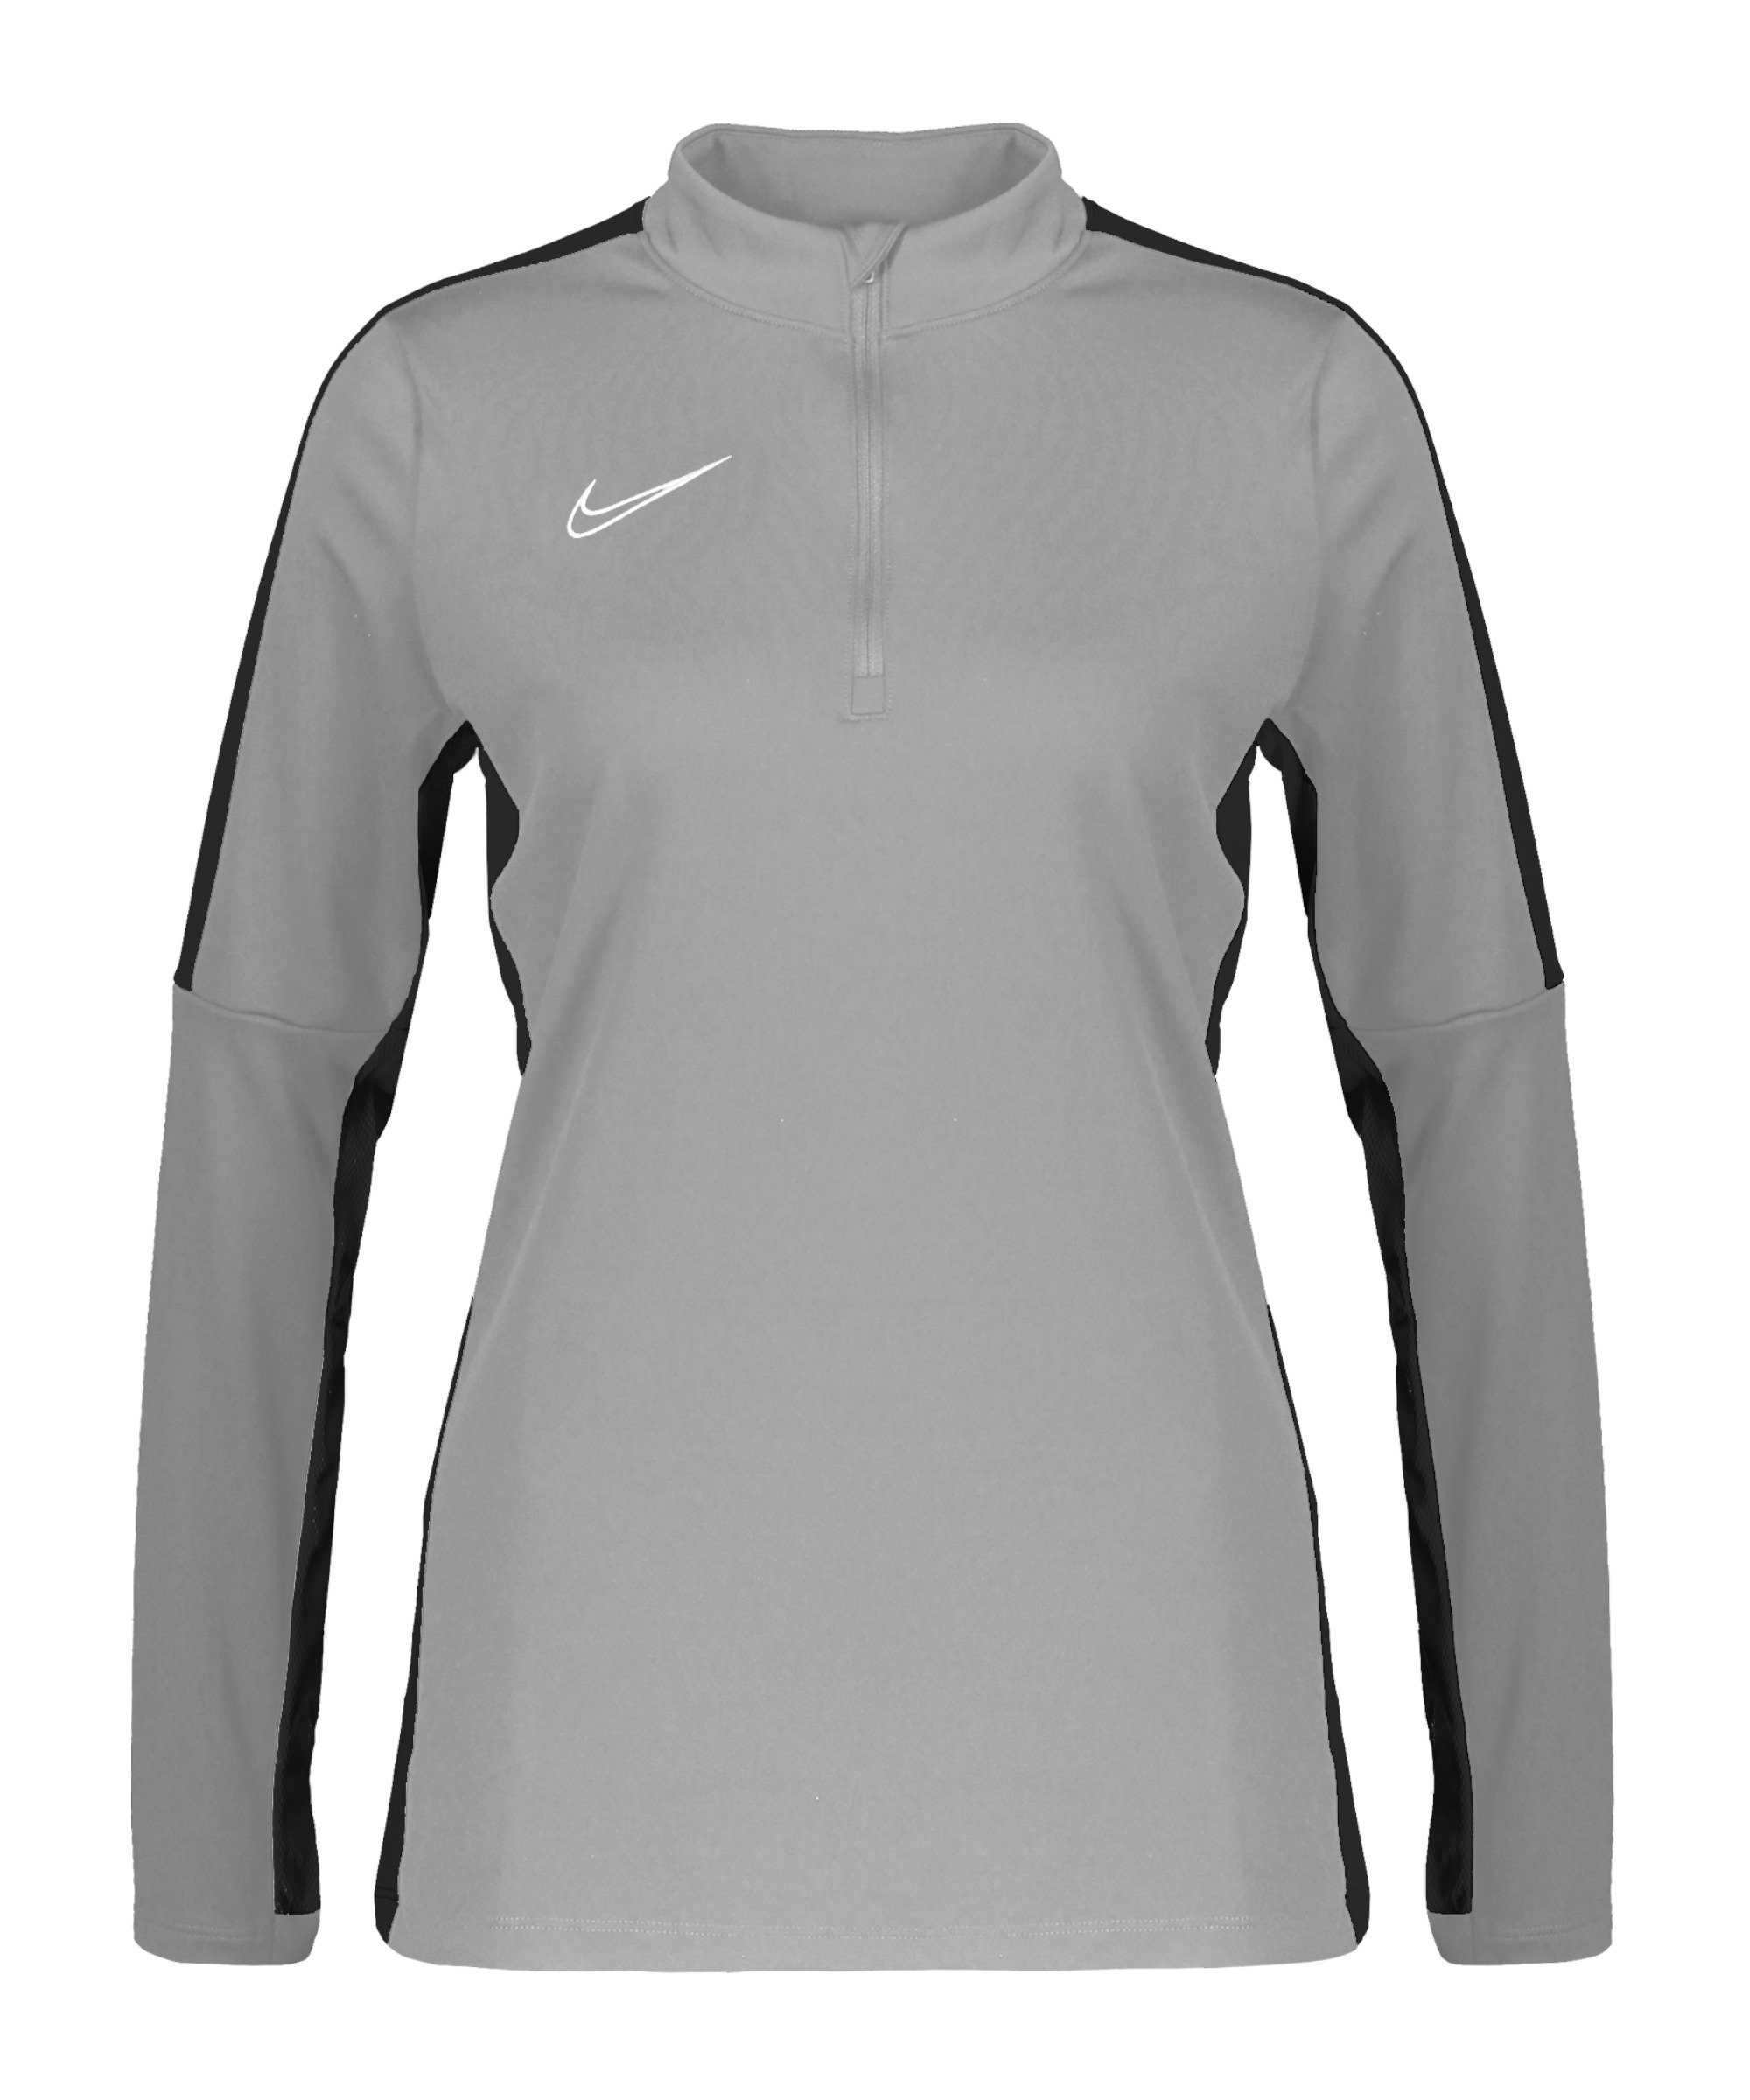 grauschwarzweiss Sweater Nike 23 Damen Top Drill Academy